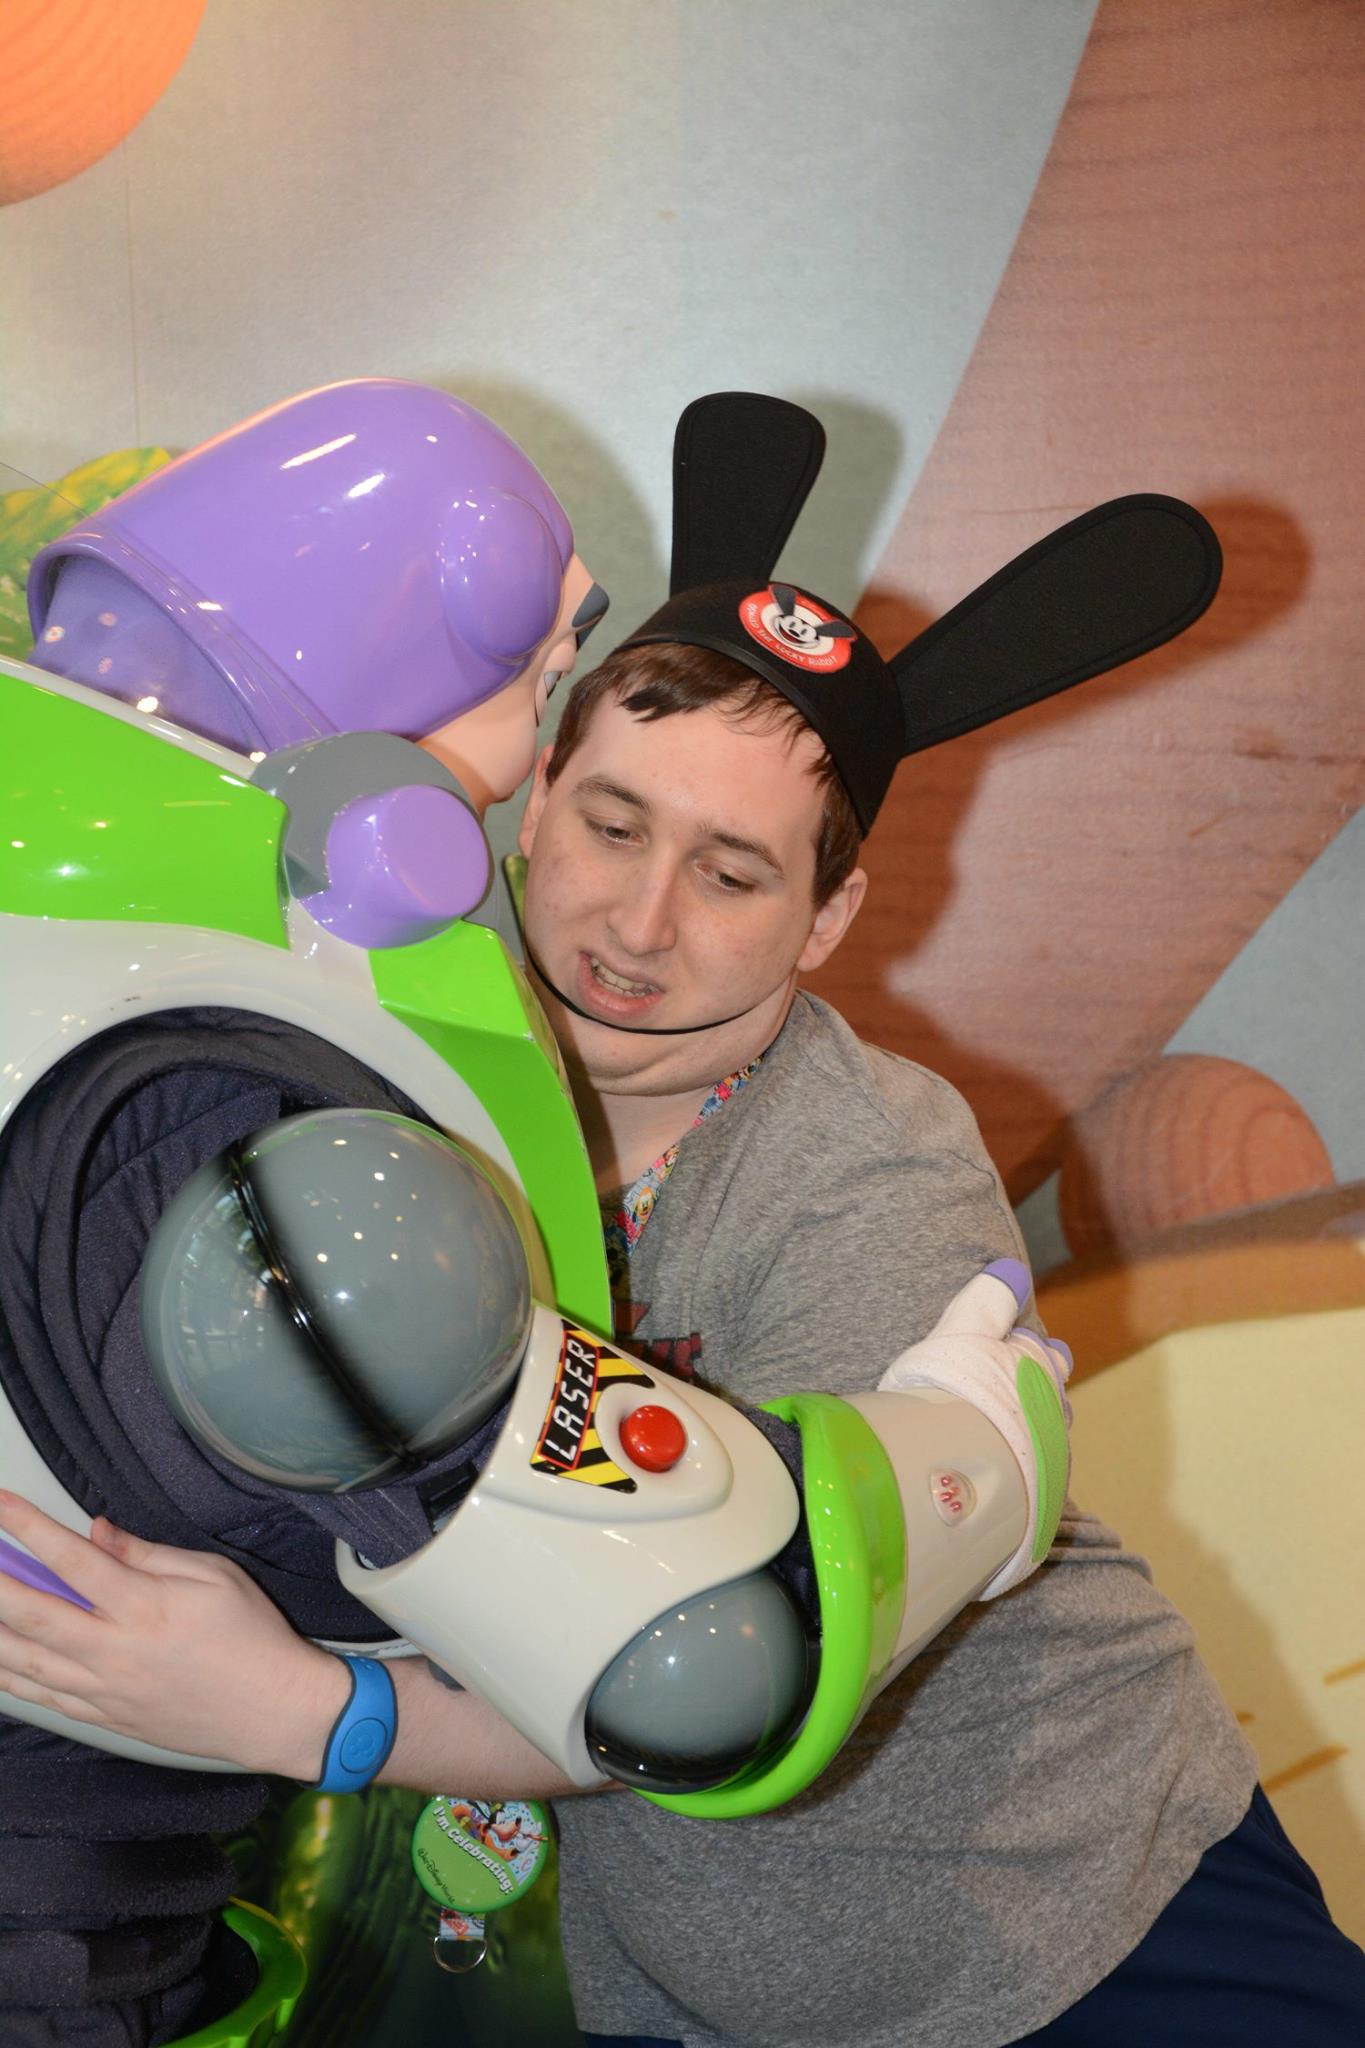 Hugging Buzz Lightyear